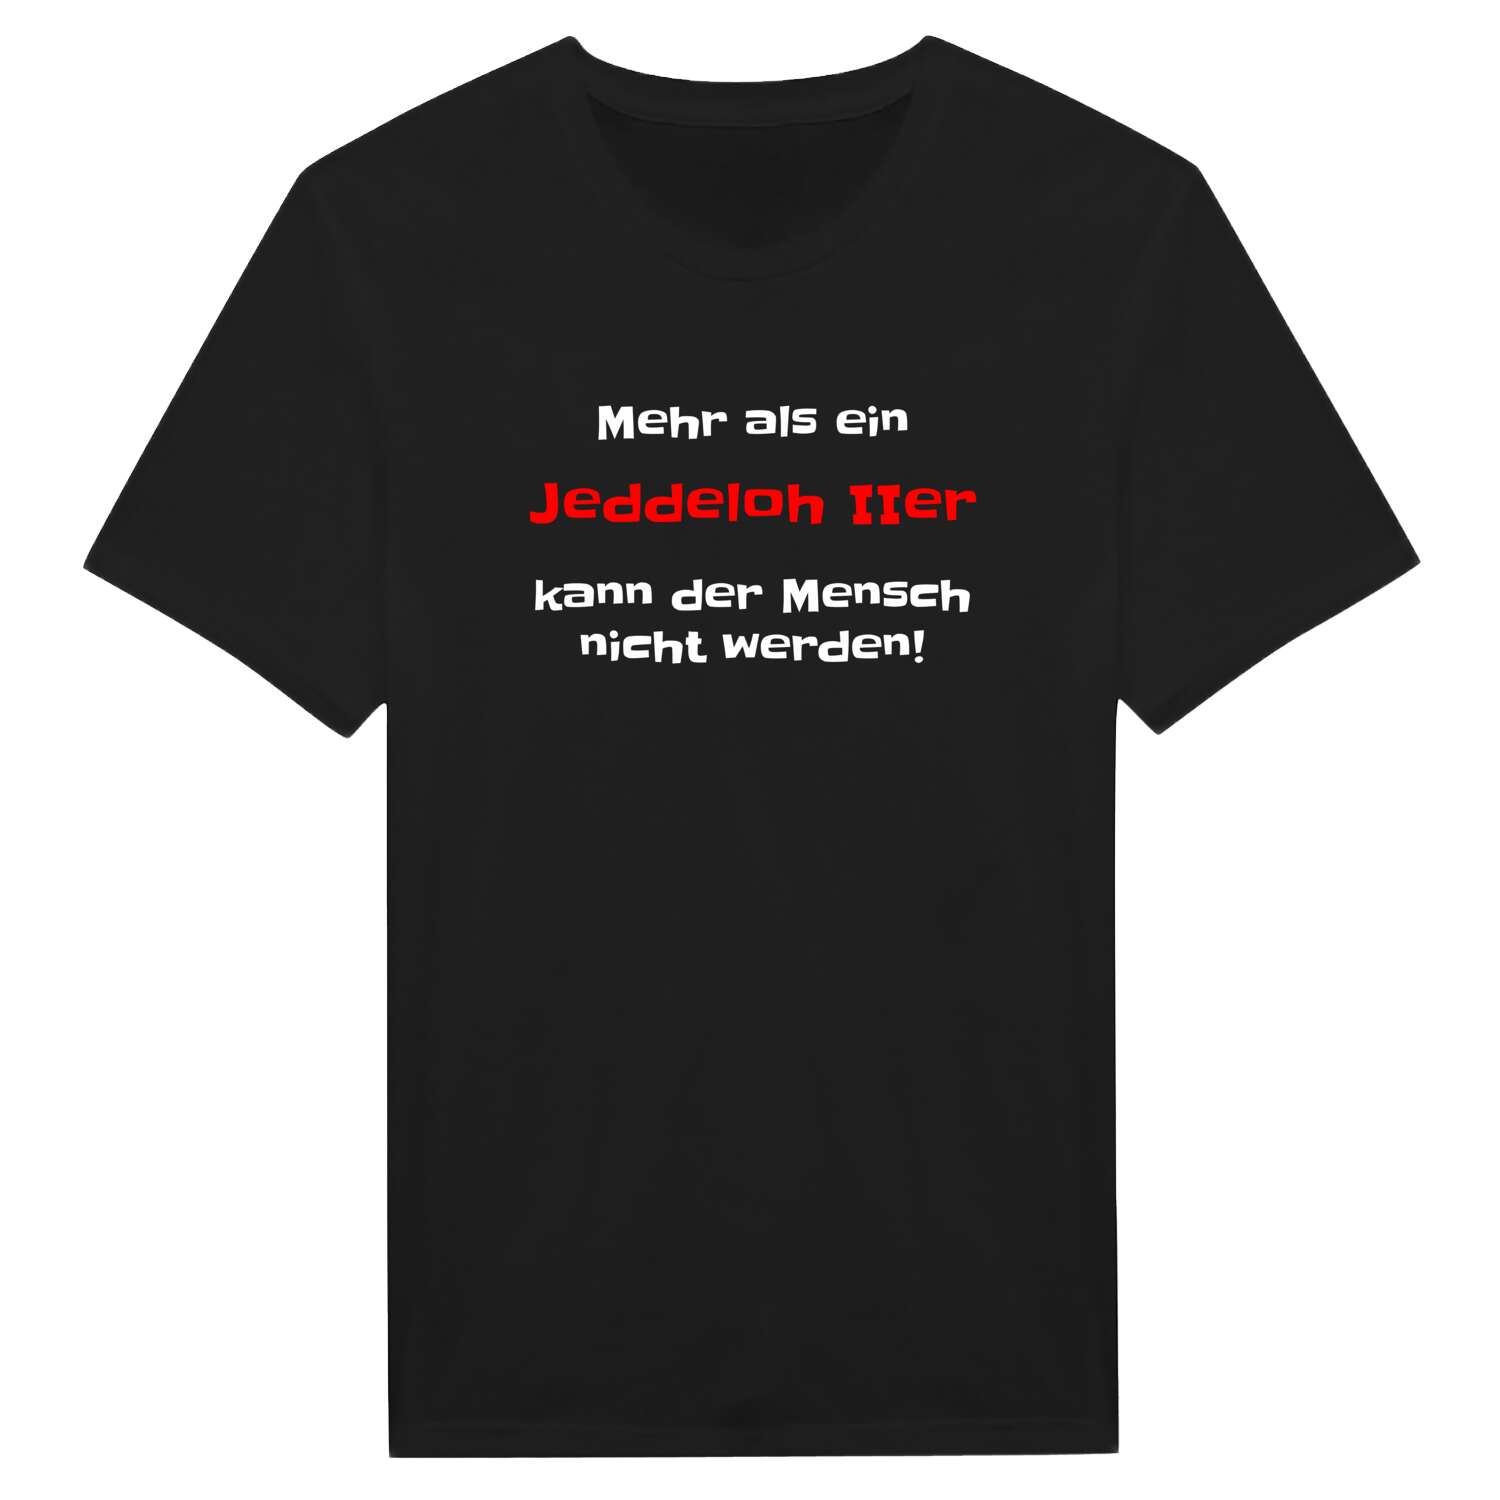 Jeddeloh II T-Shirt »Mehr als ein«